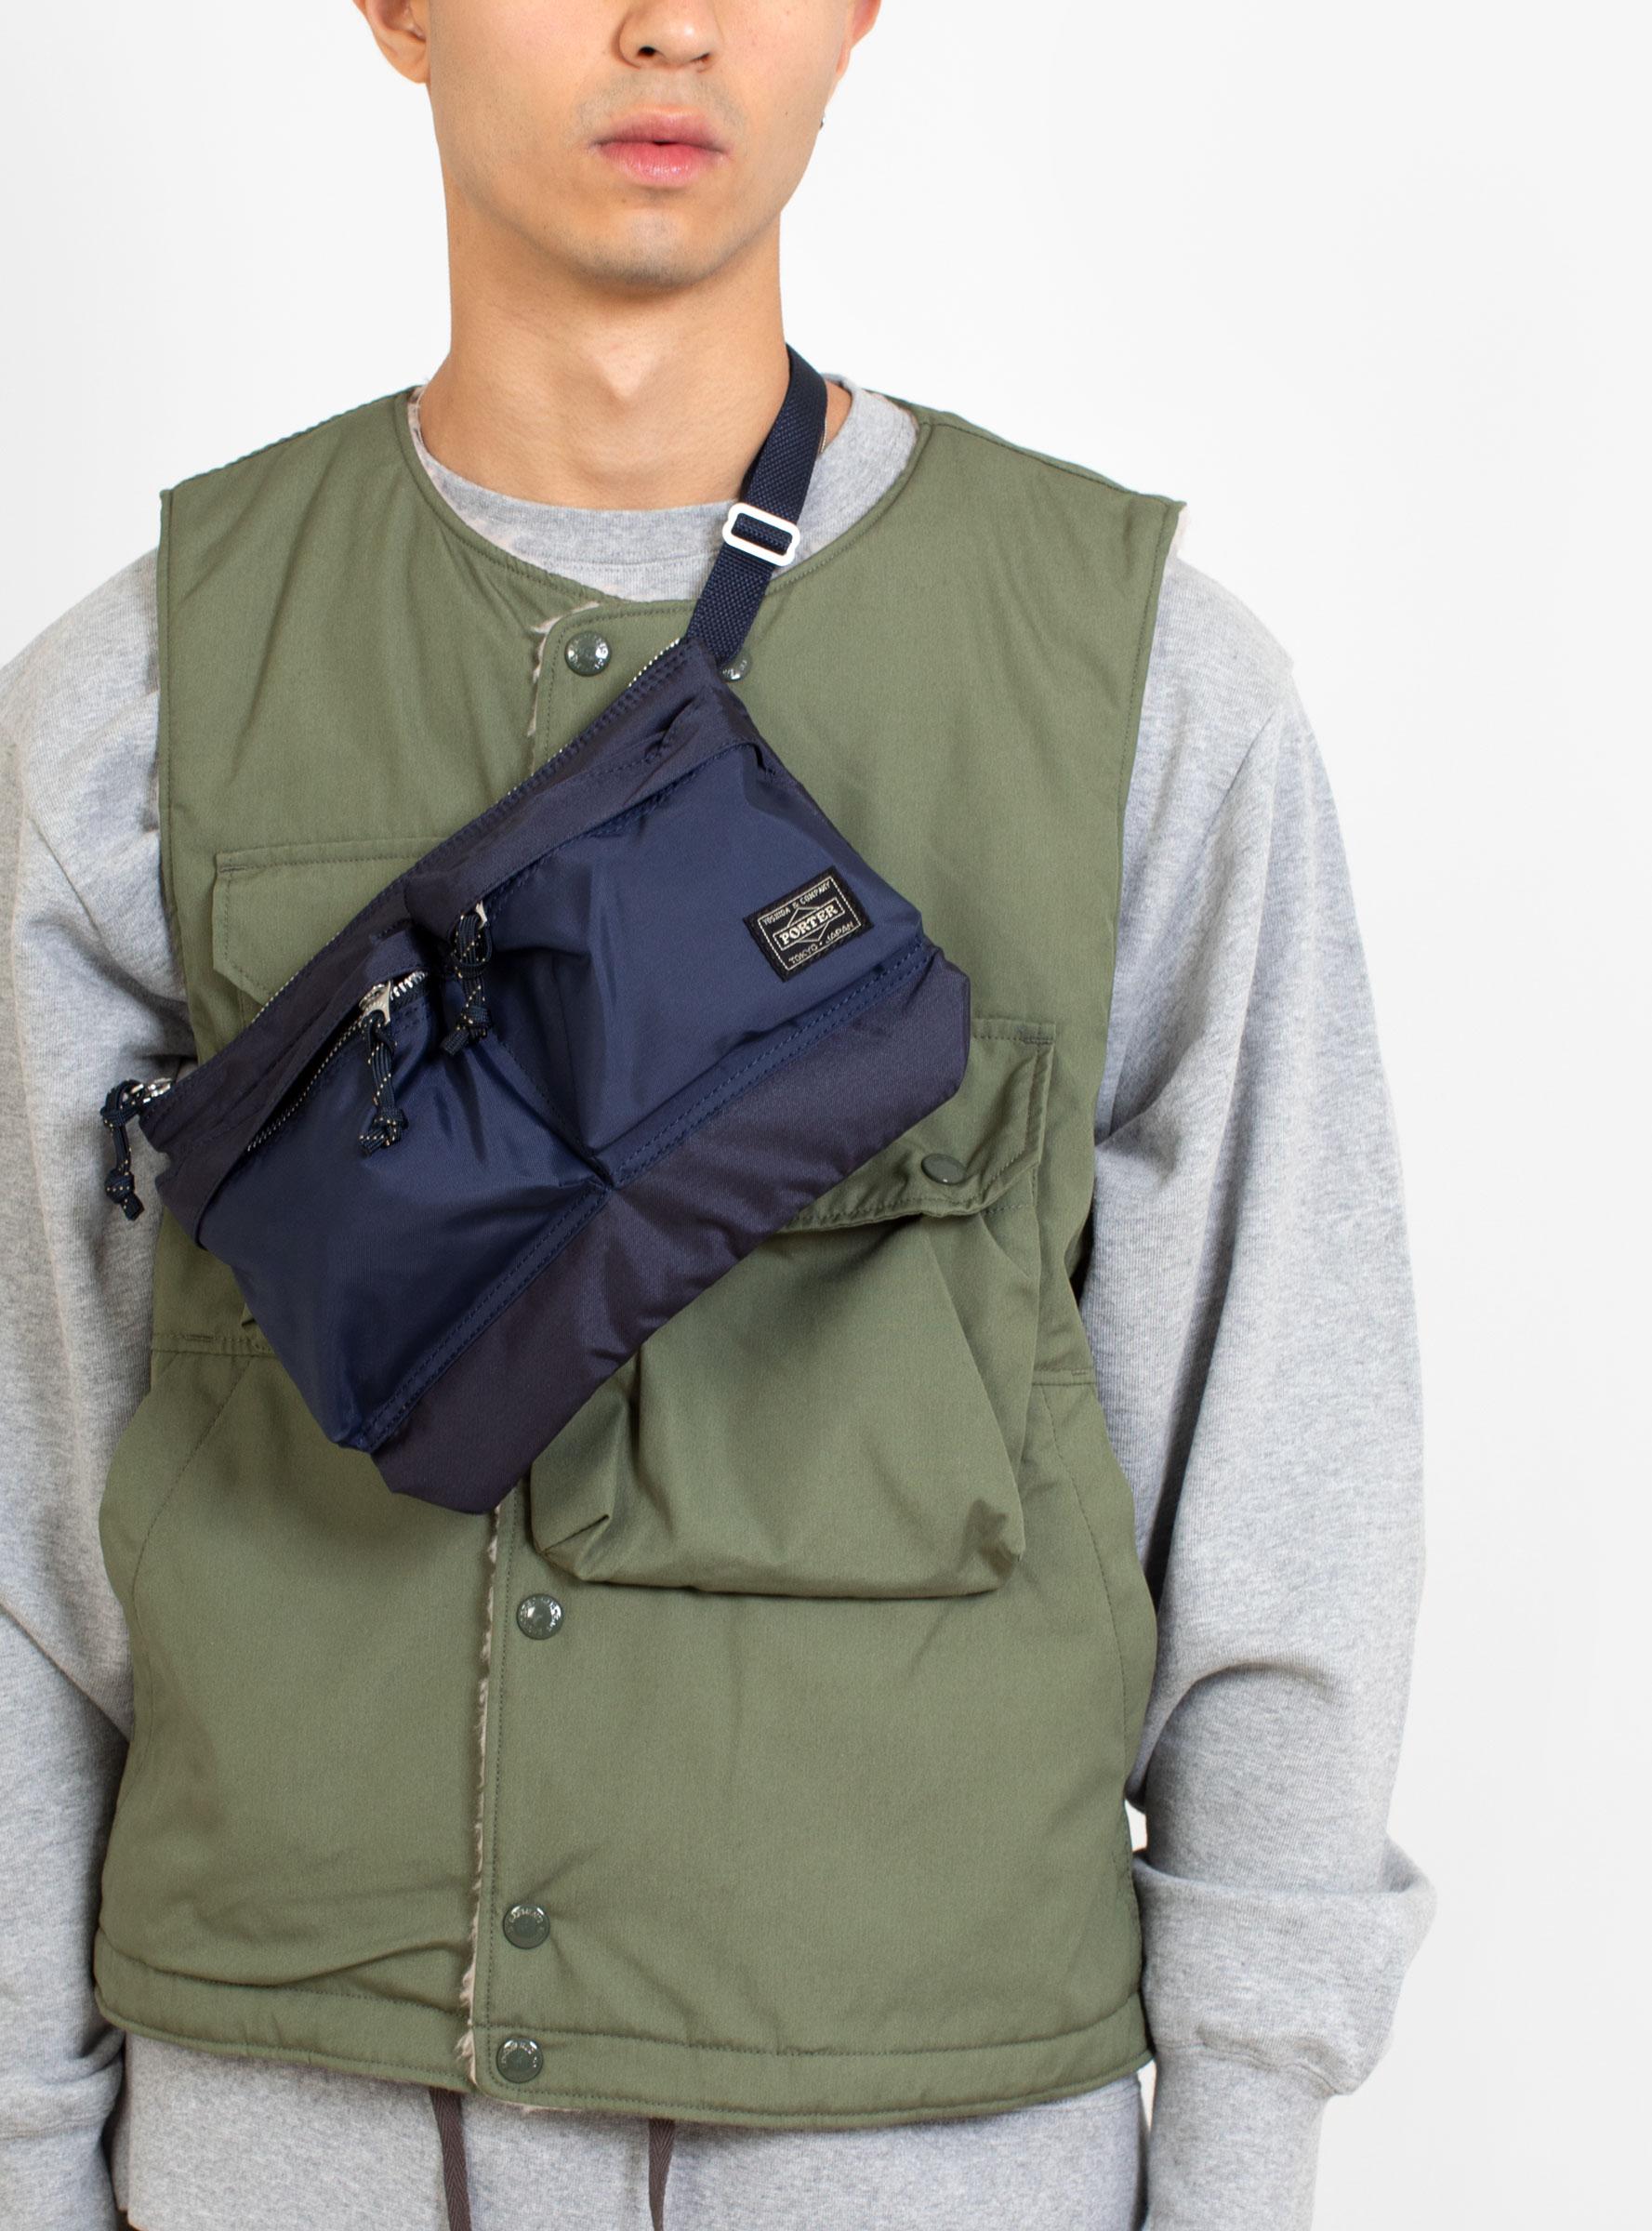 Porter-Yoshida and Co Force Shoulder Bag Navy in Blue for Men